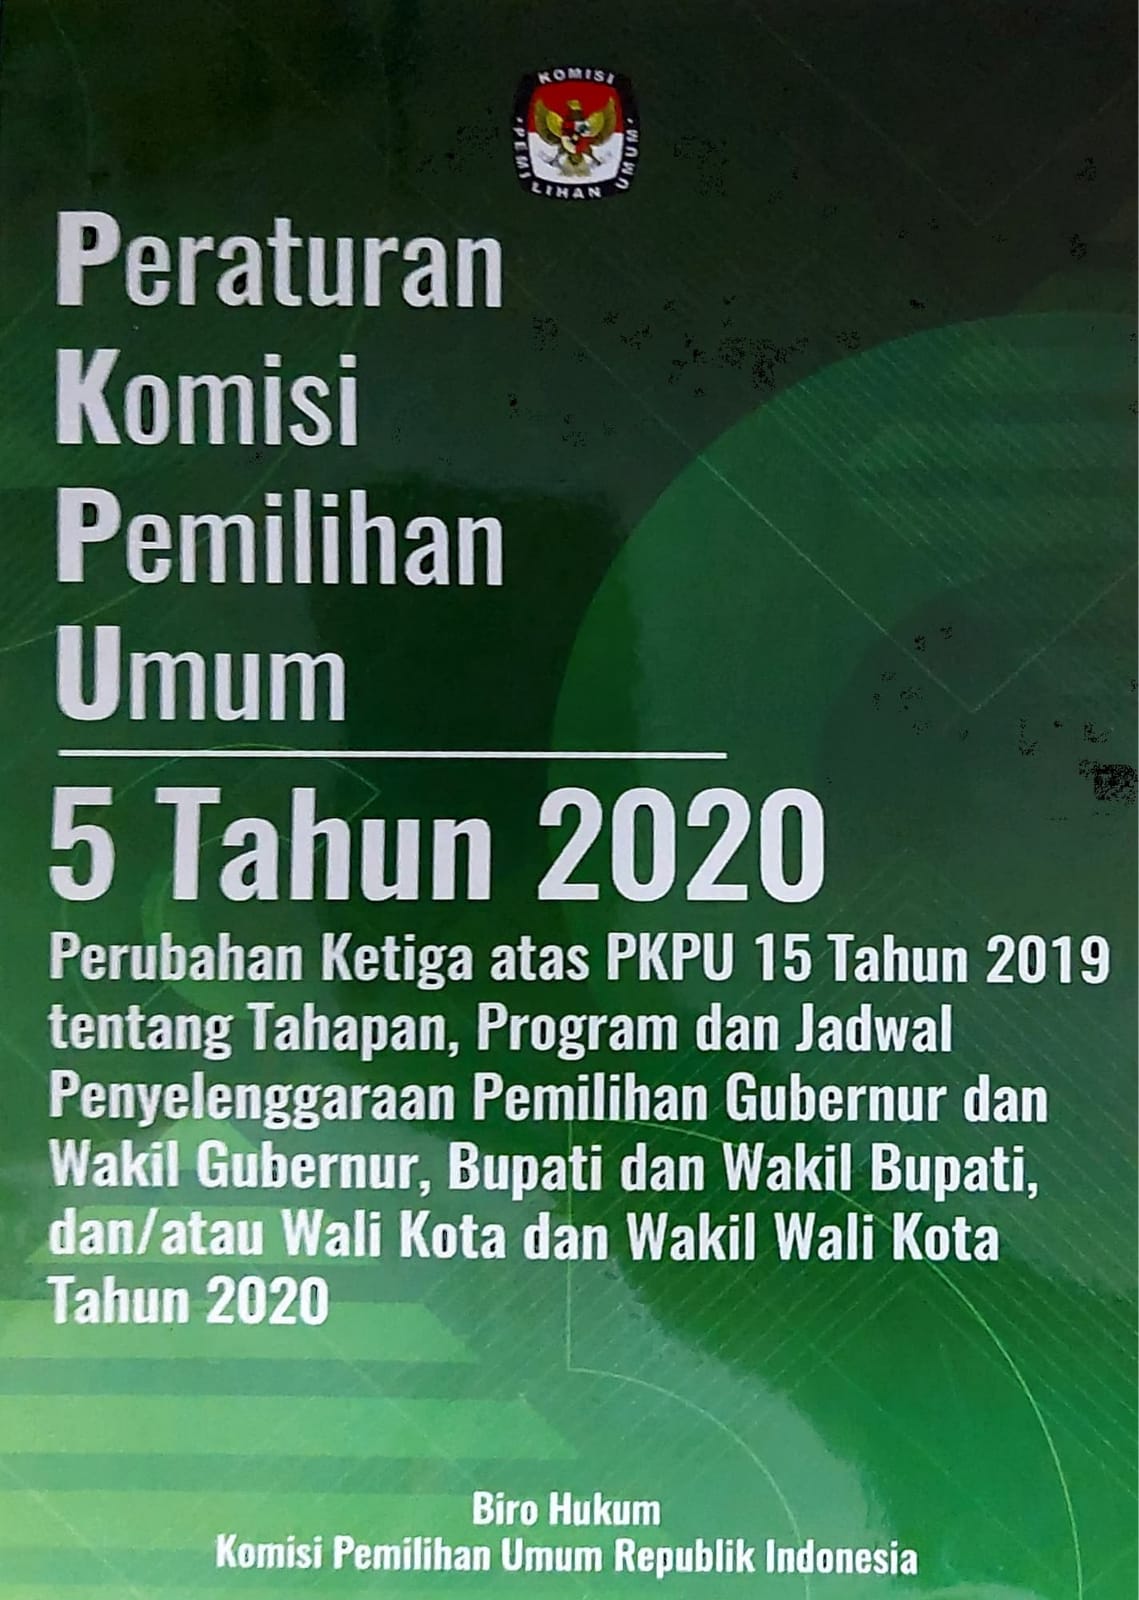 Peraturan komisi pemilihan umum nomor 5 tahun 2020